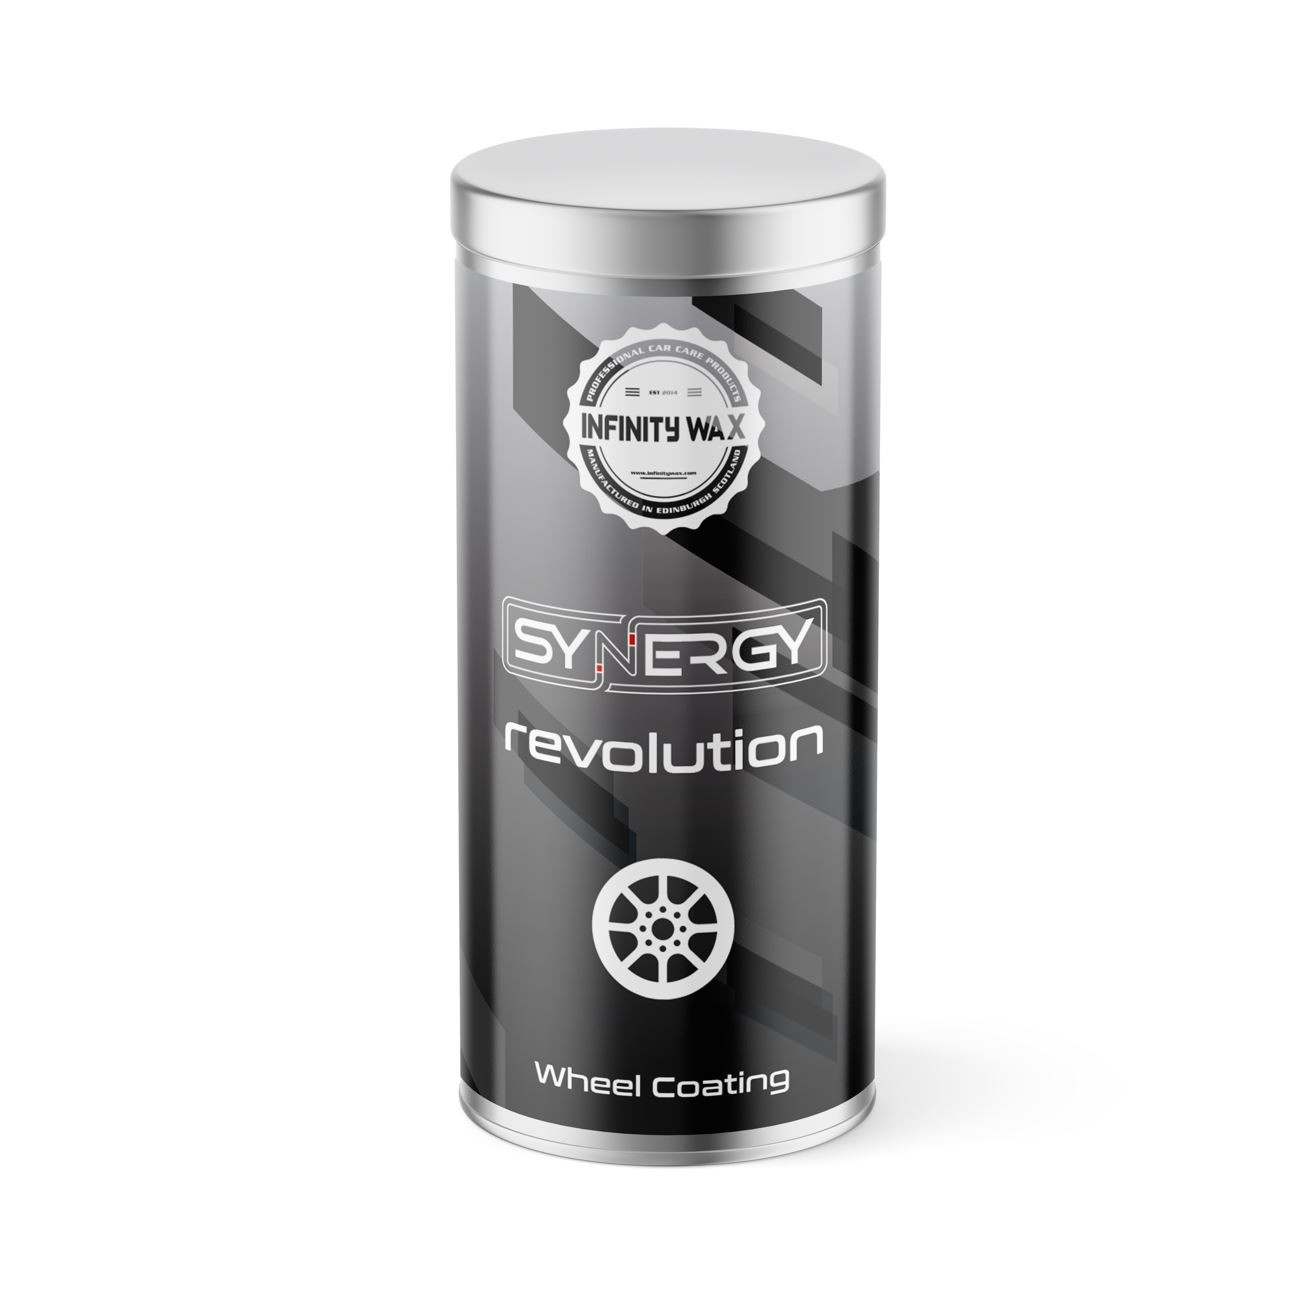 Keramická ochrana na kola Infinity Wax Synergy Revolution - Wheel Coating (15 ml)